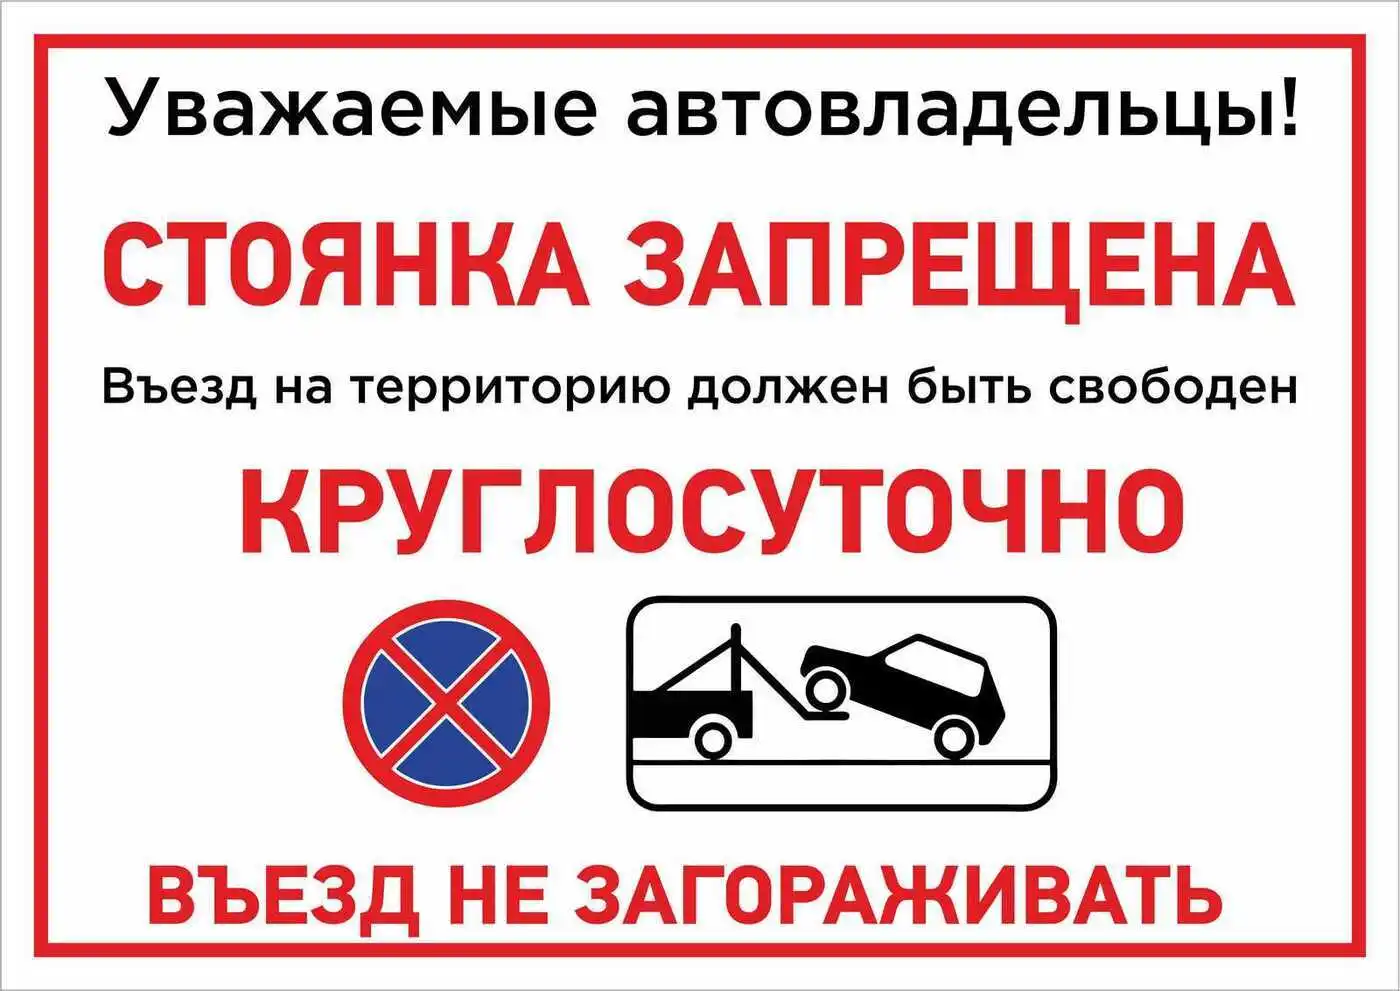 Выезд не занимать. Парковка запрещена. Парковка запрещена табличка. Автомобили не парковать табличка. Въезд не загораживать.